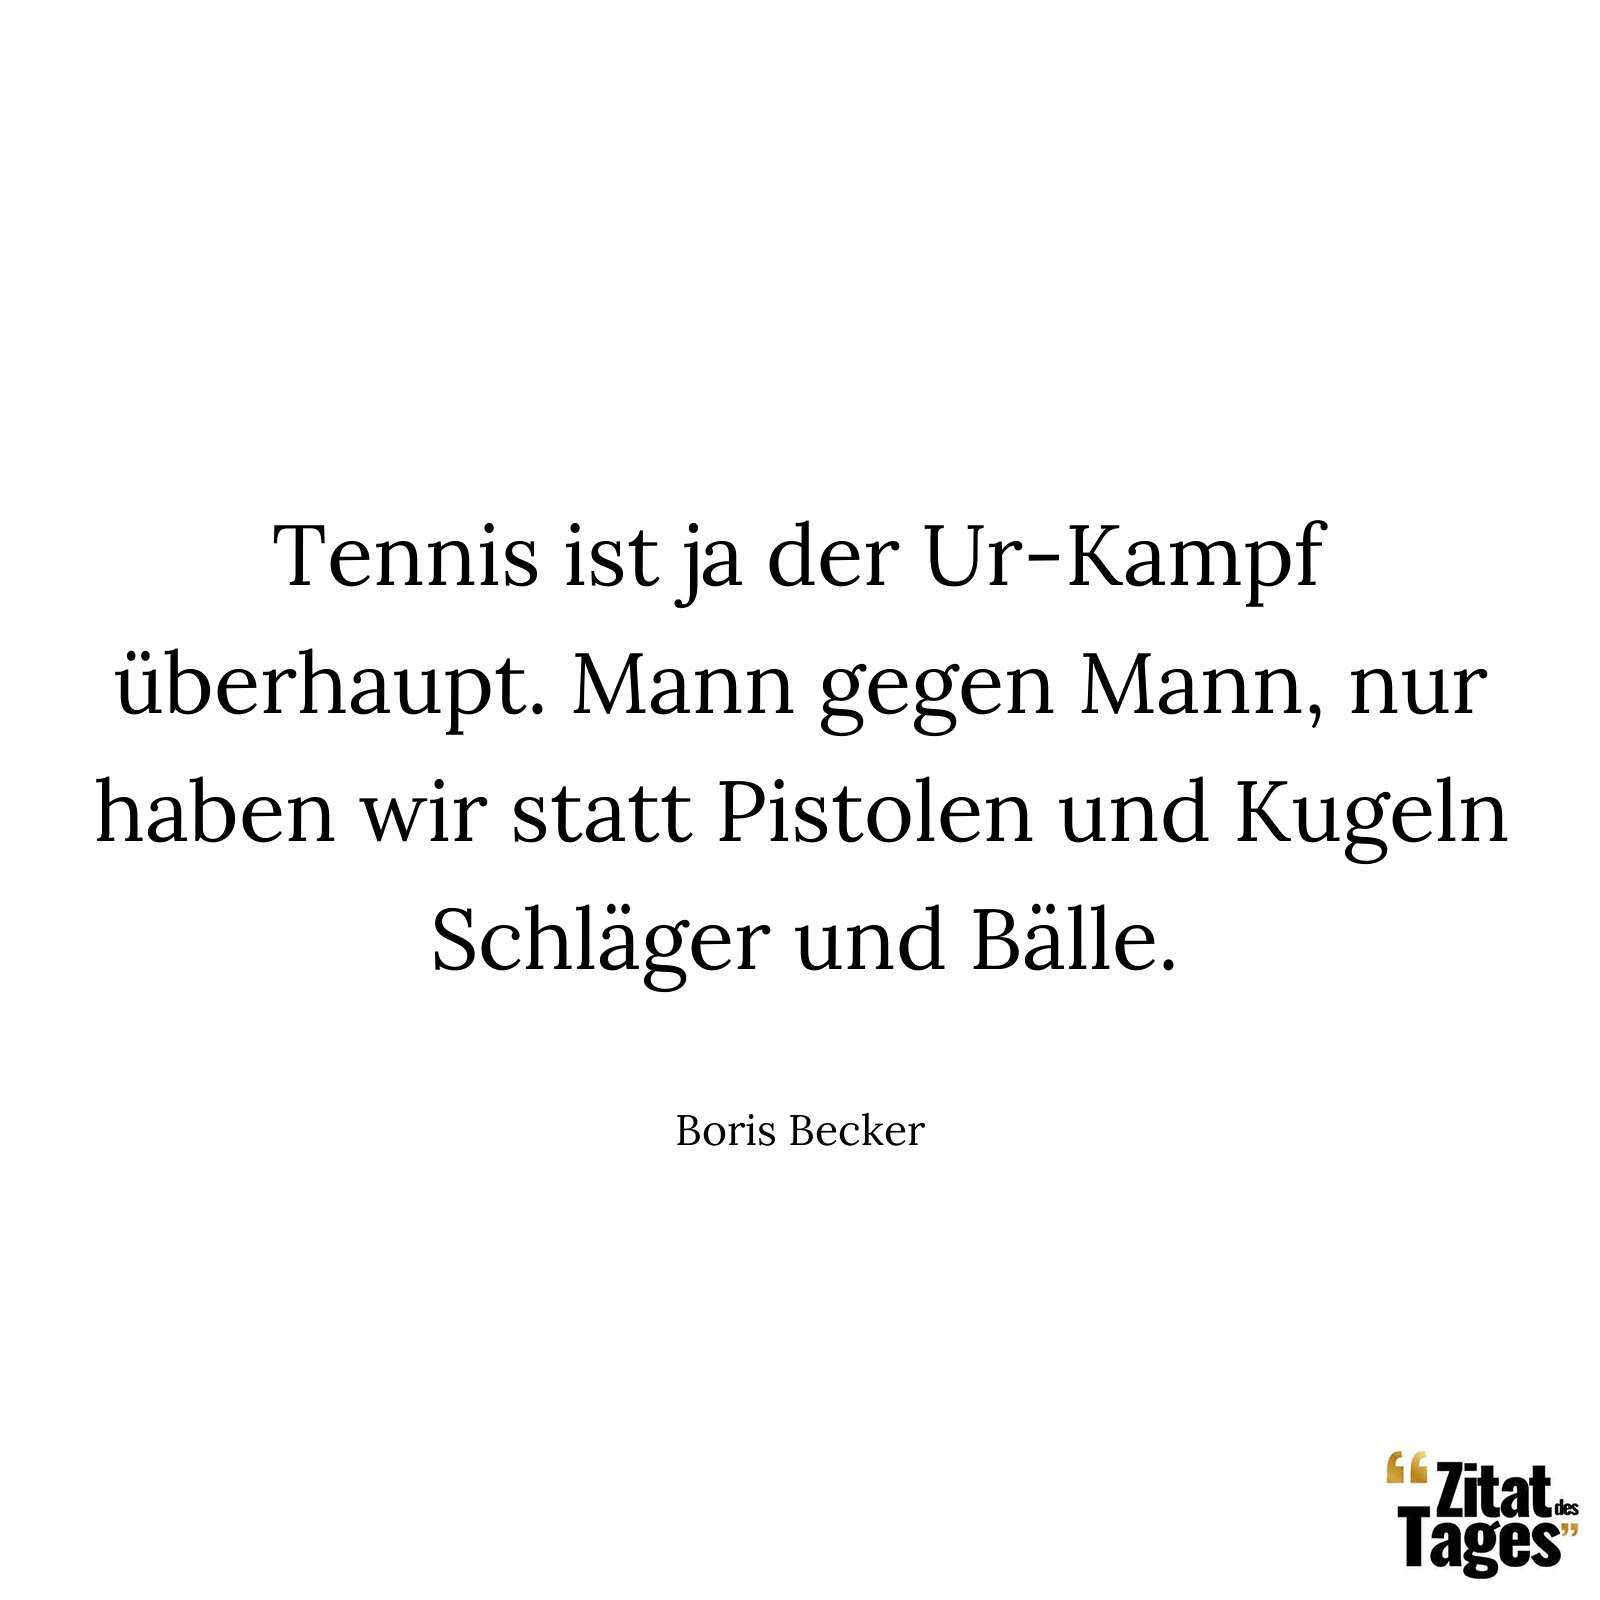 Tennis ist ja der Ur-Kampf überhaupt. Mann gegen Mann, nur haben wir statt Pistolen und Kugeln Schläger und Bälle. - Boris Becker